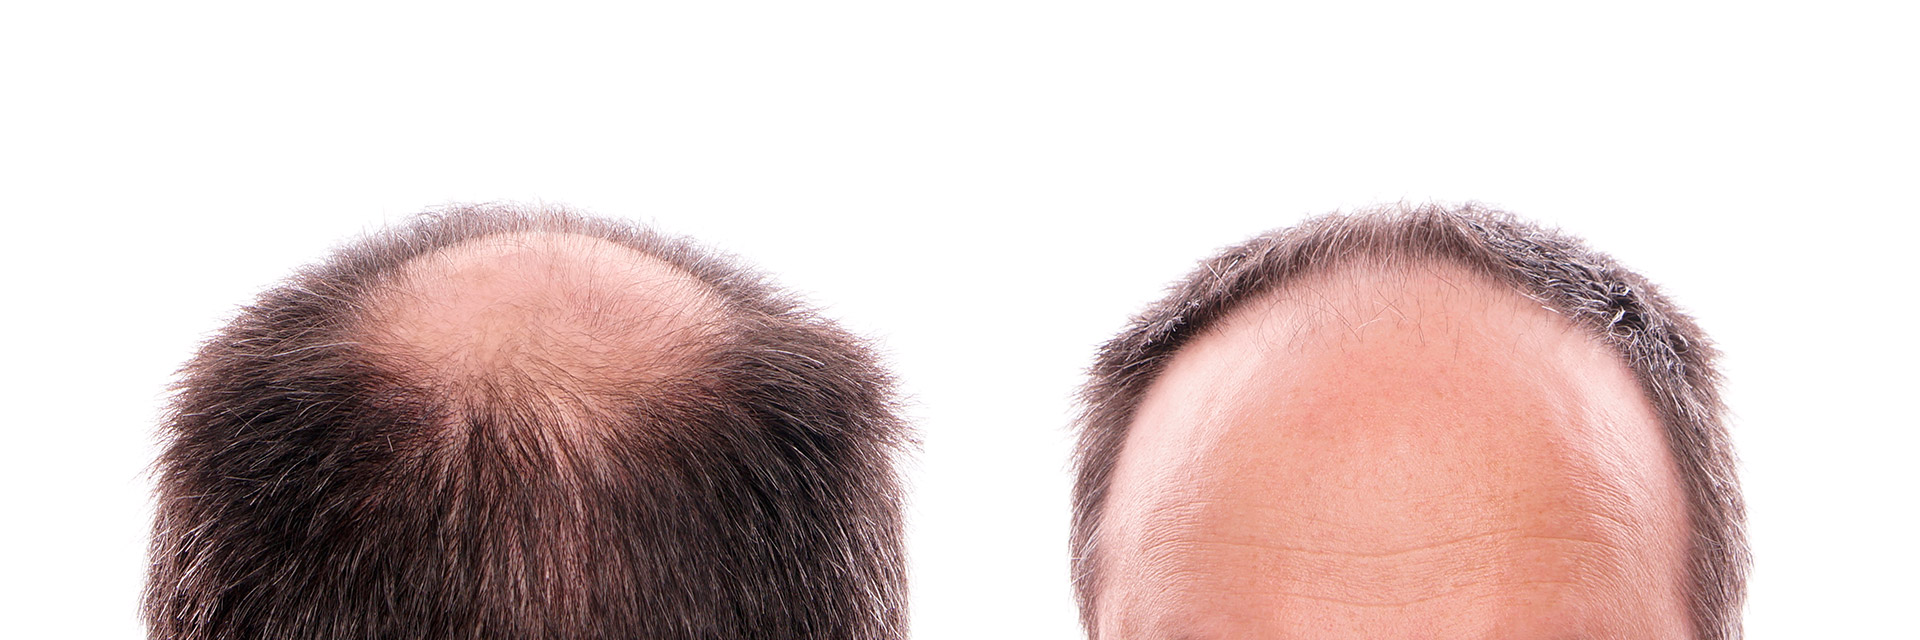 Hair regrow bald areas